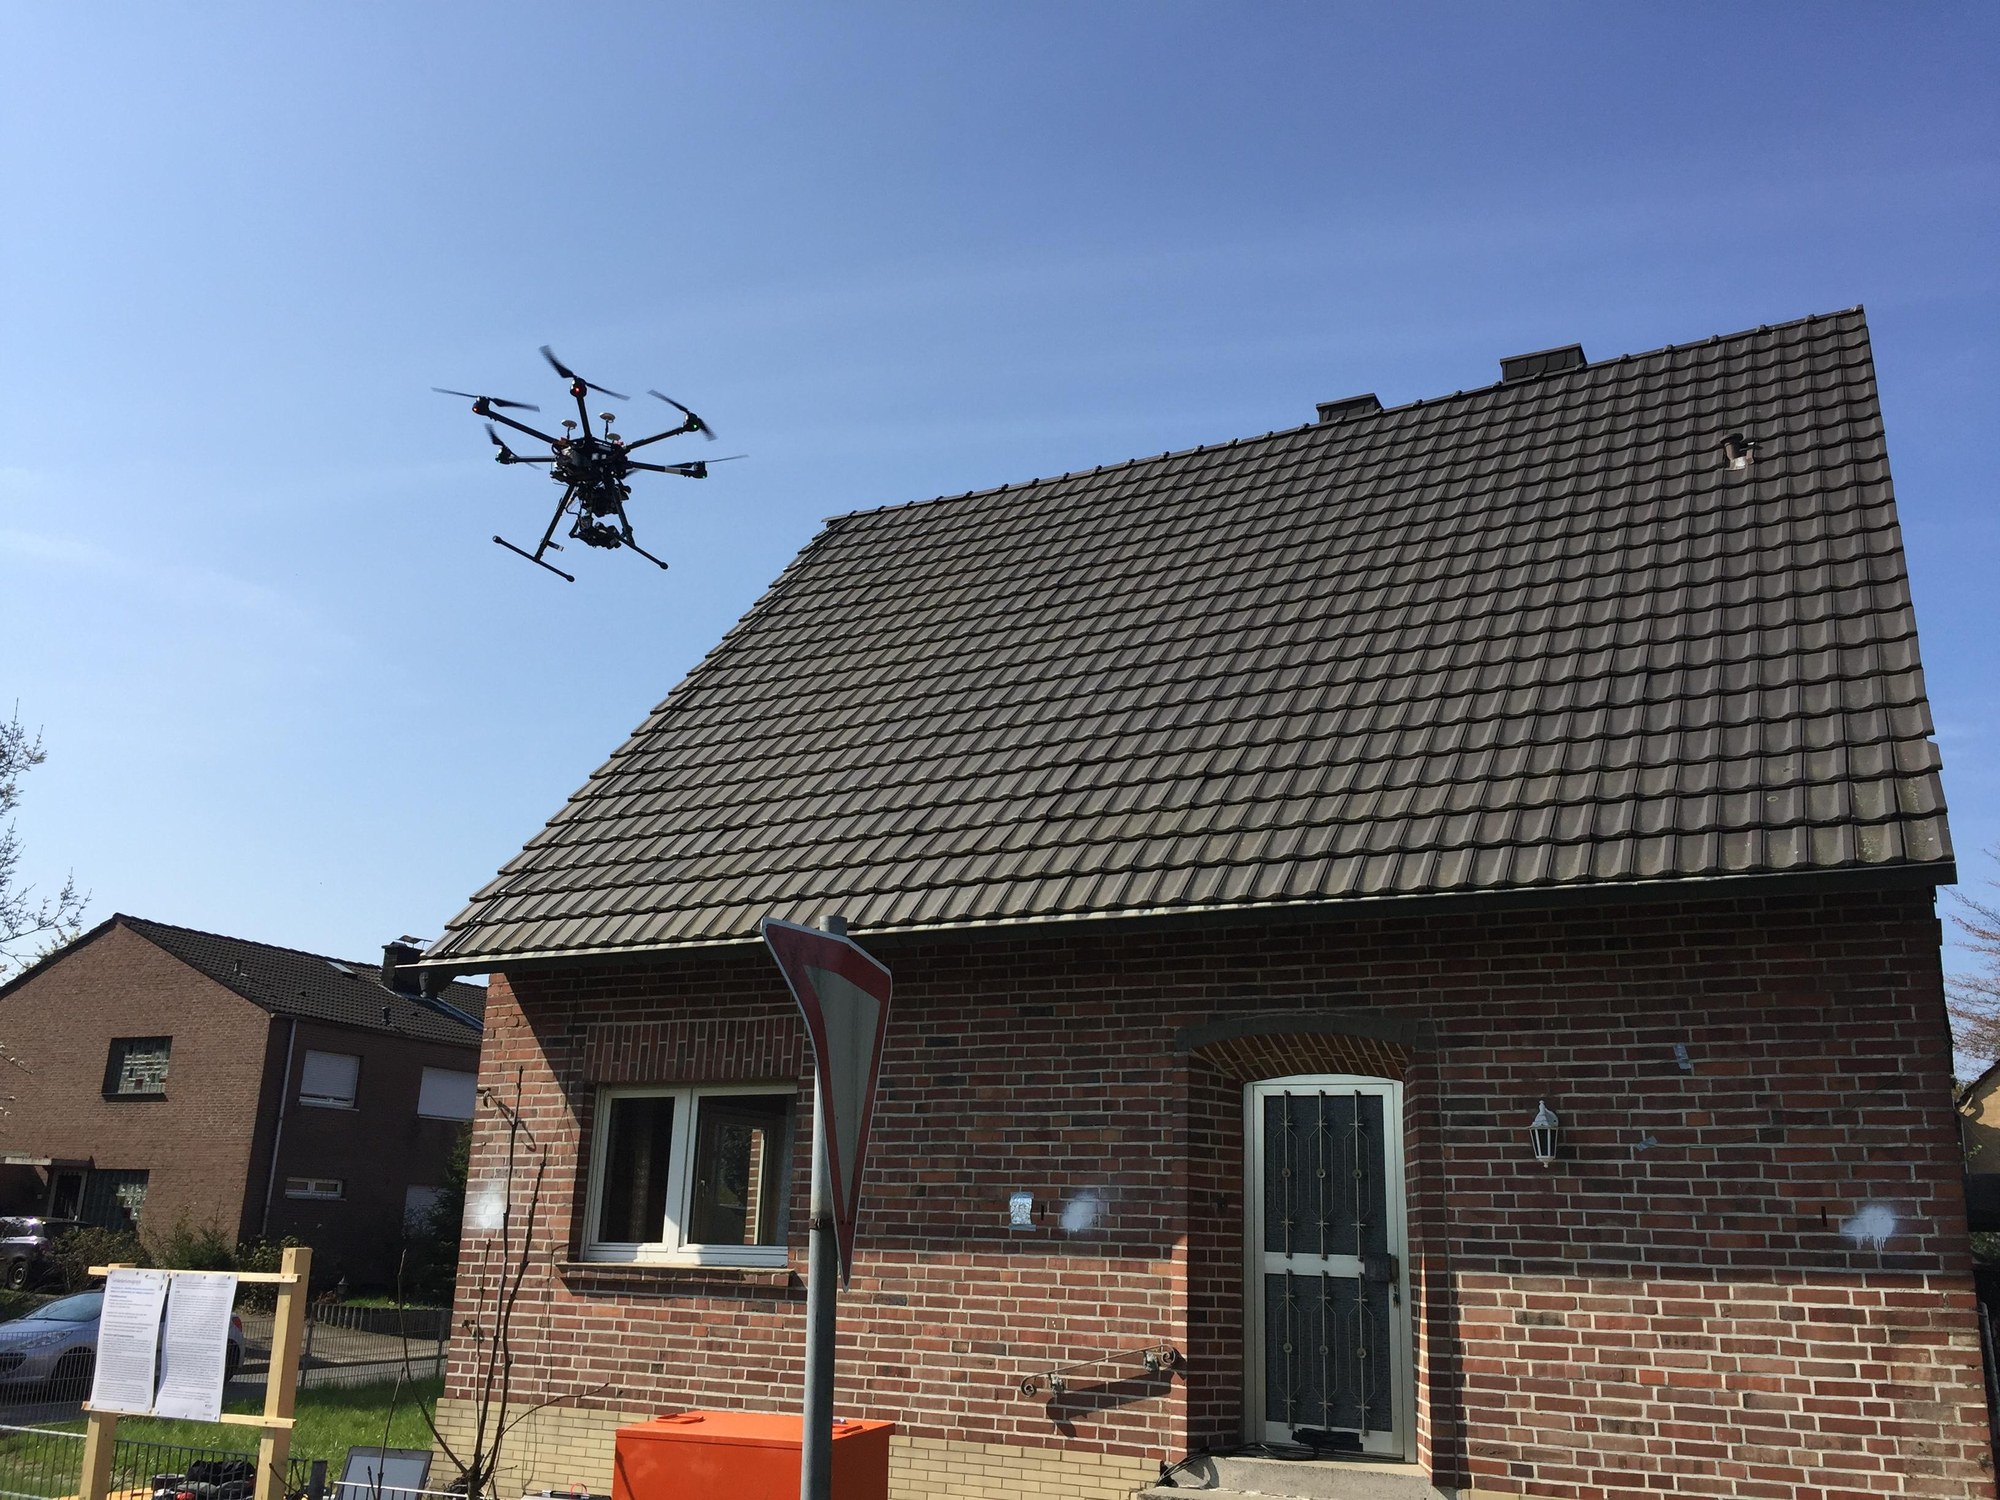 Testgebäude mit Drohne